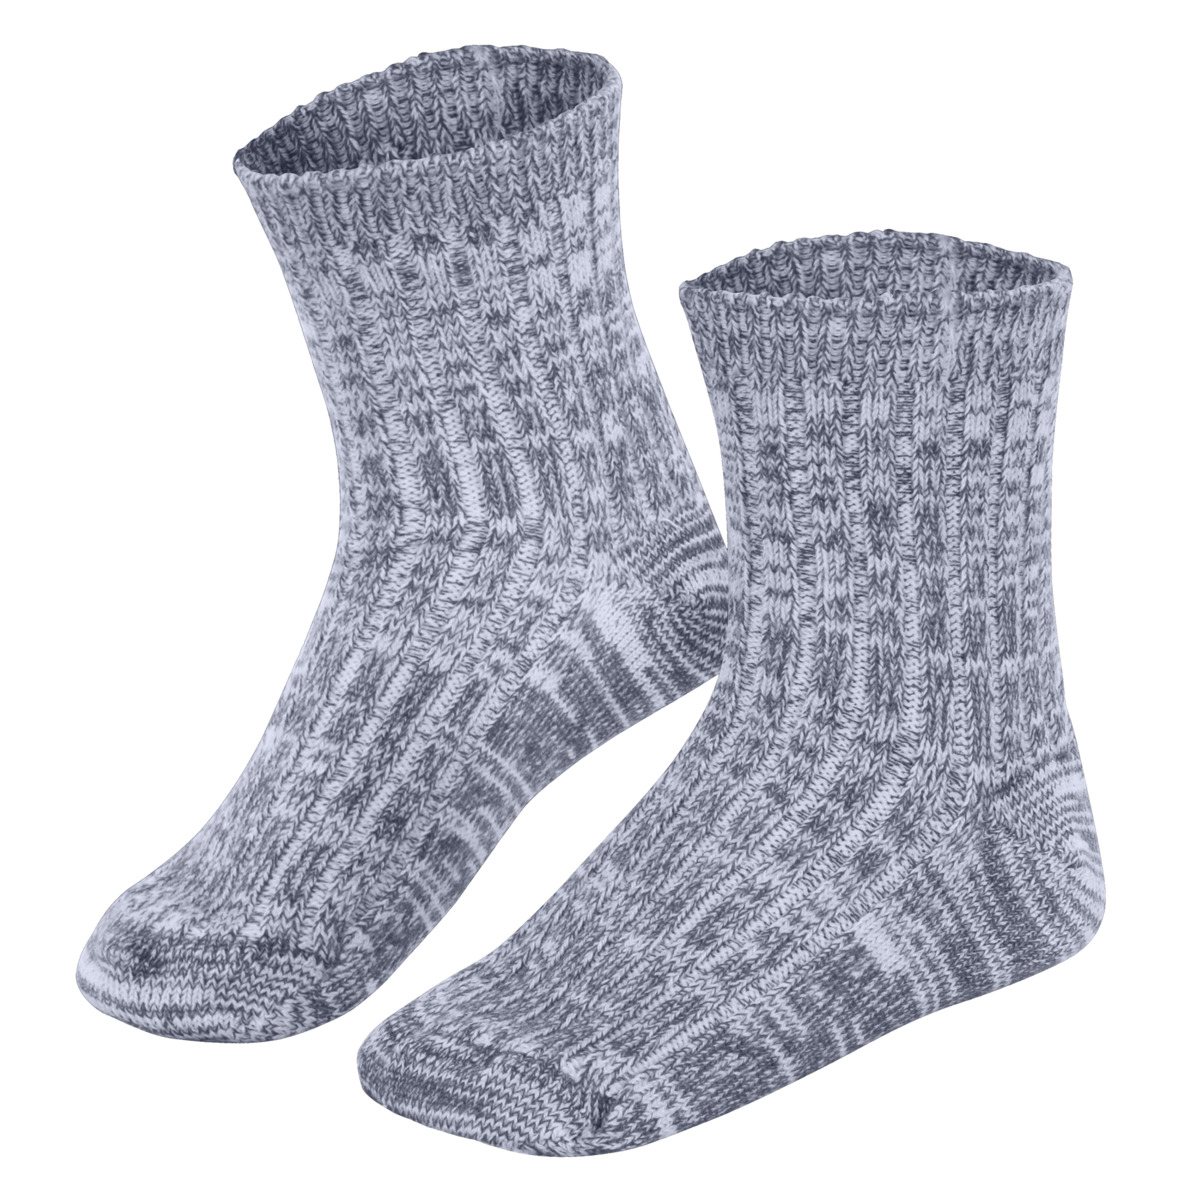 Blue Norwegian socks for kids, 